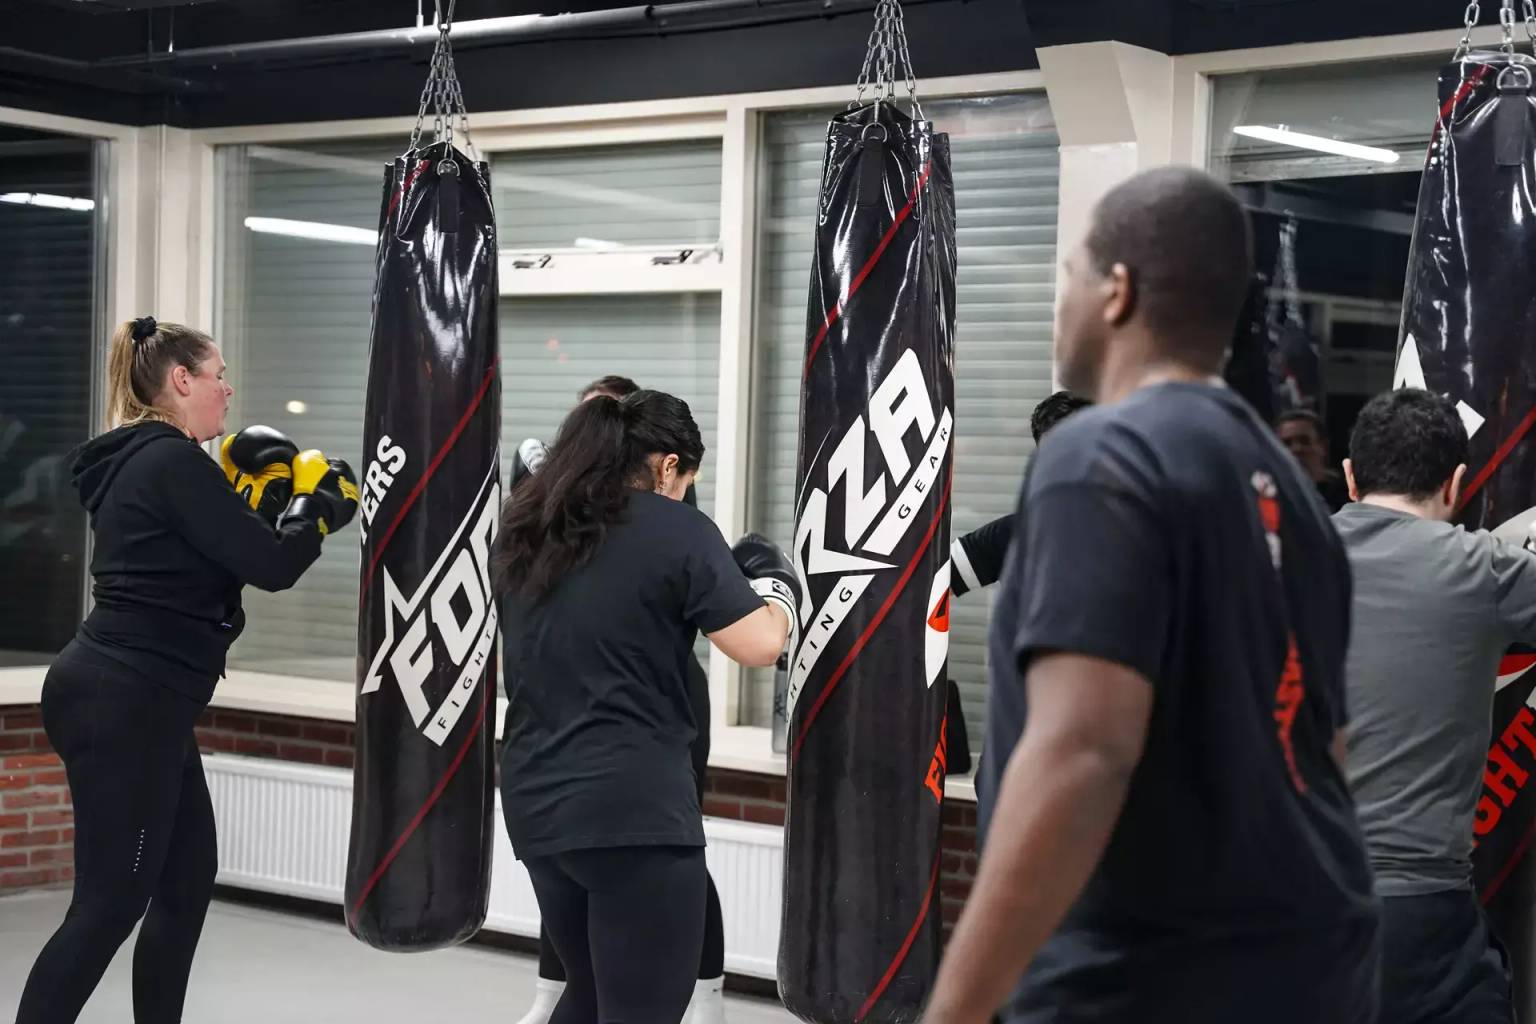 Mensen zijn bezig met een bokstraining, waarbij ze oefenen met hangende bokszakken in een sportschool.